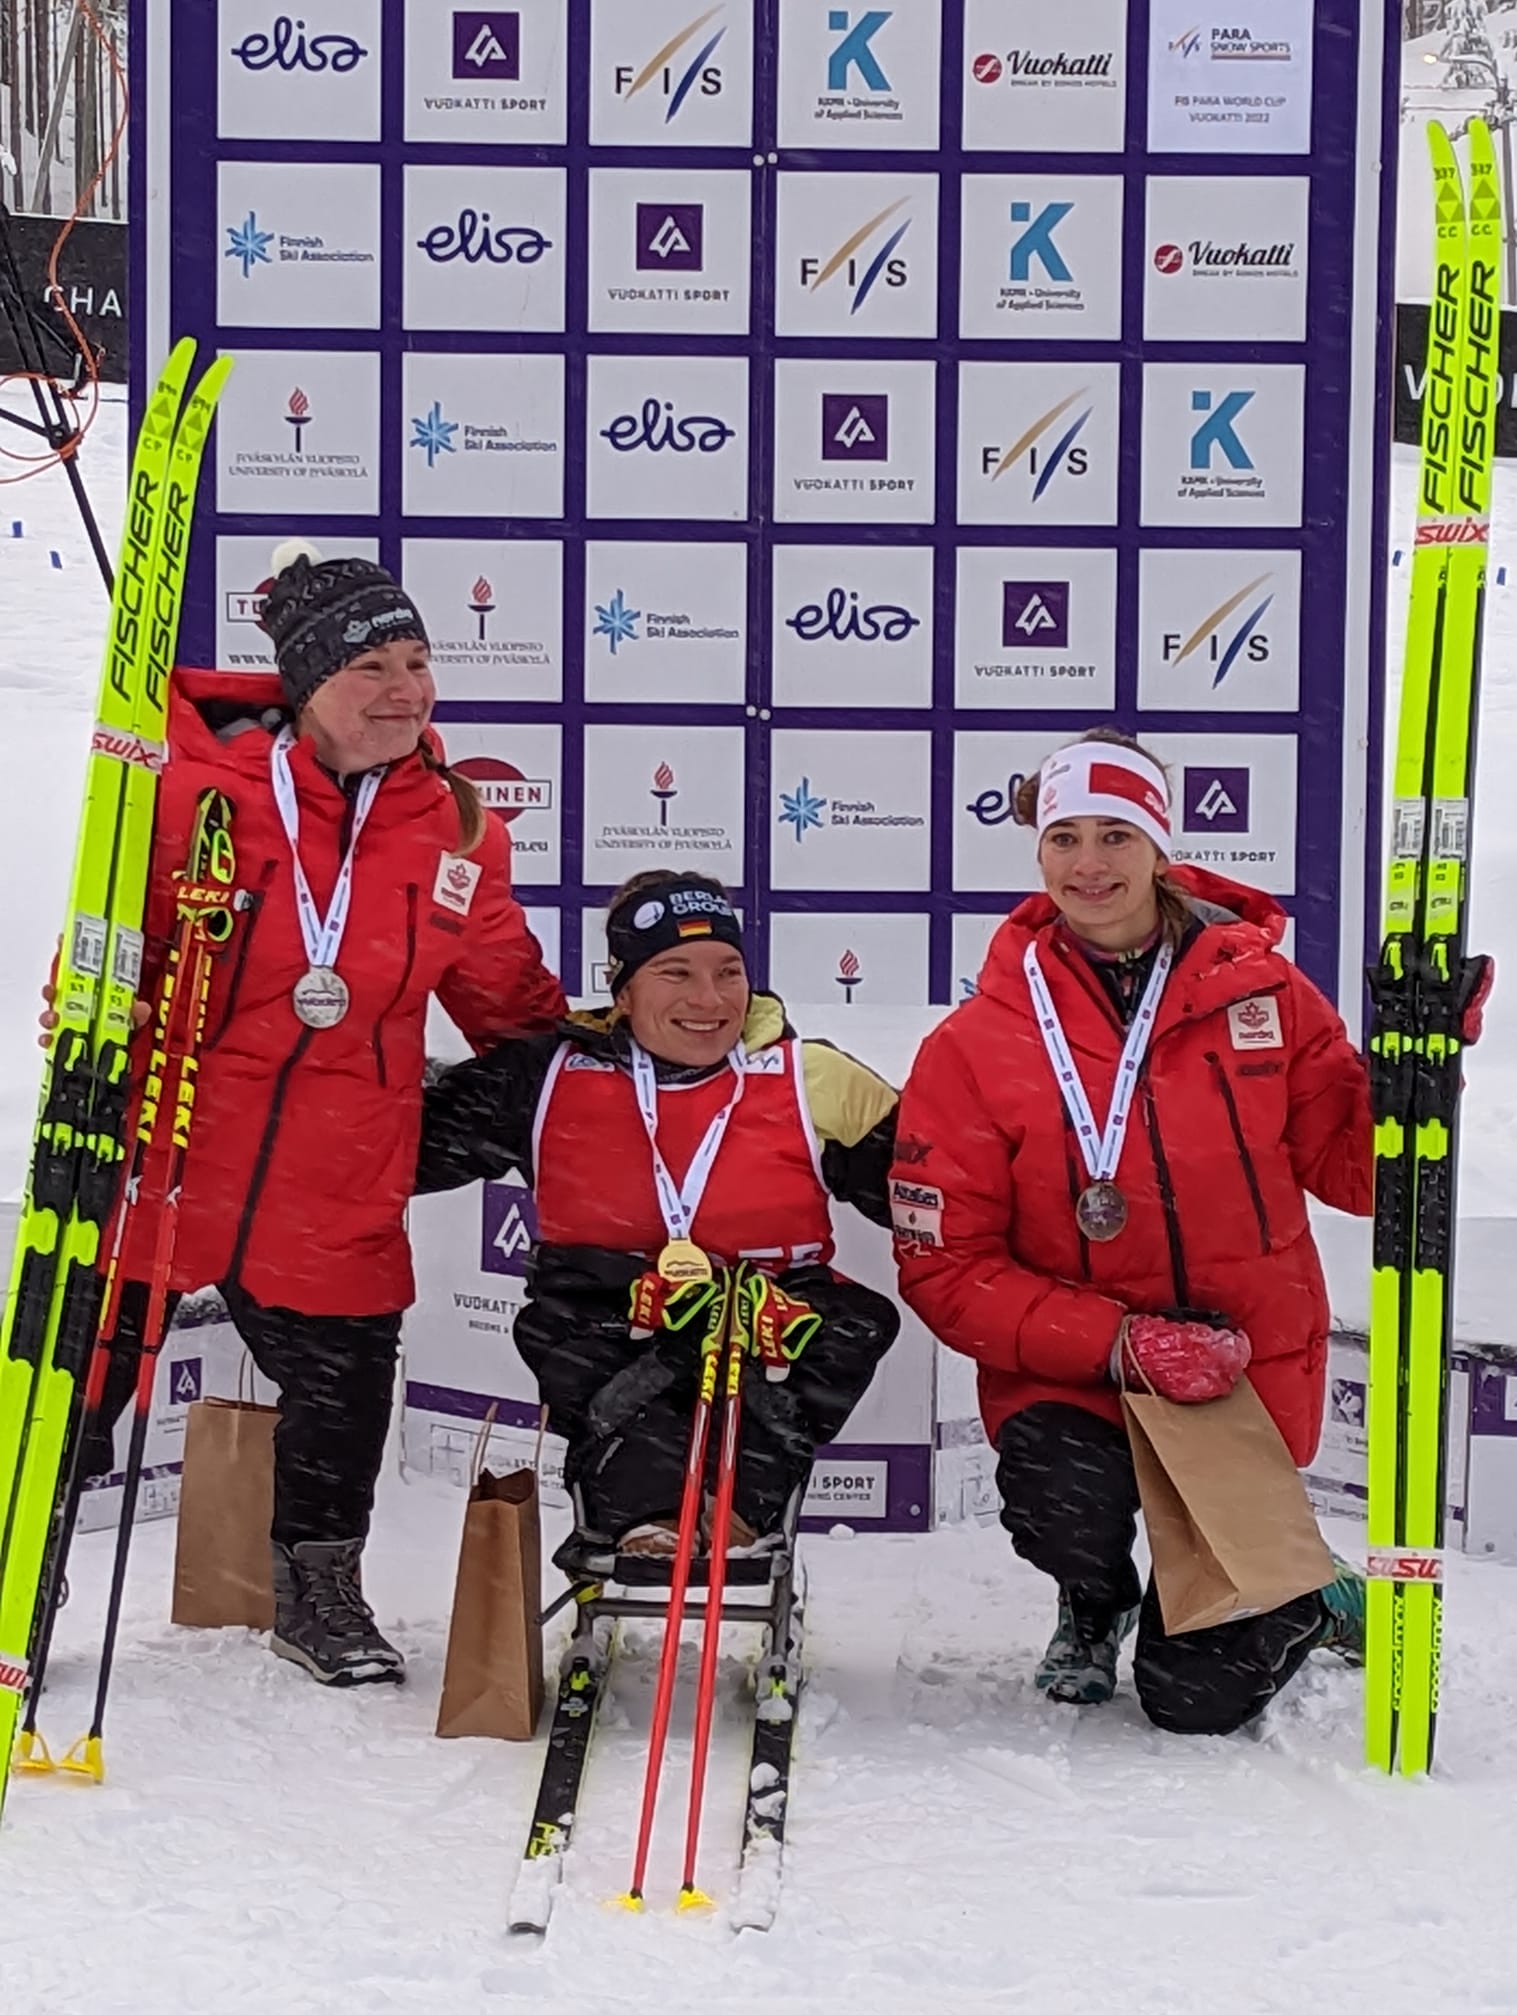 Trois skieuses paranordique souriantes avec leur médaille.